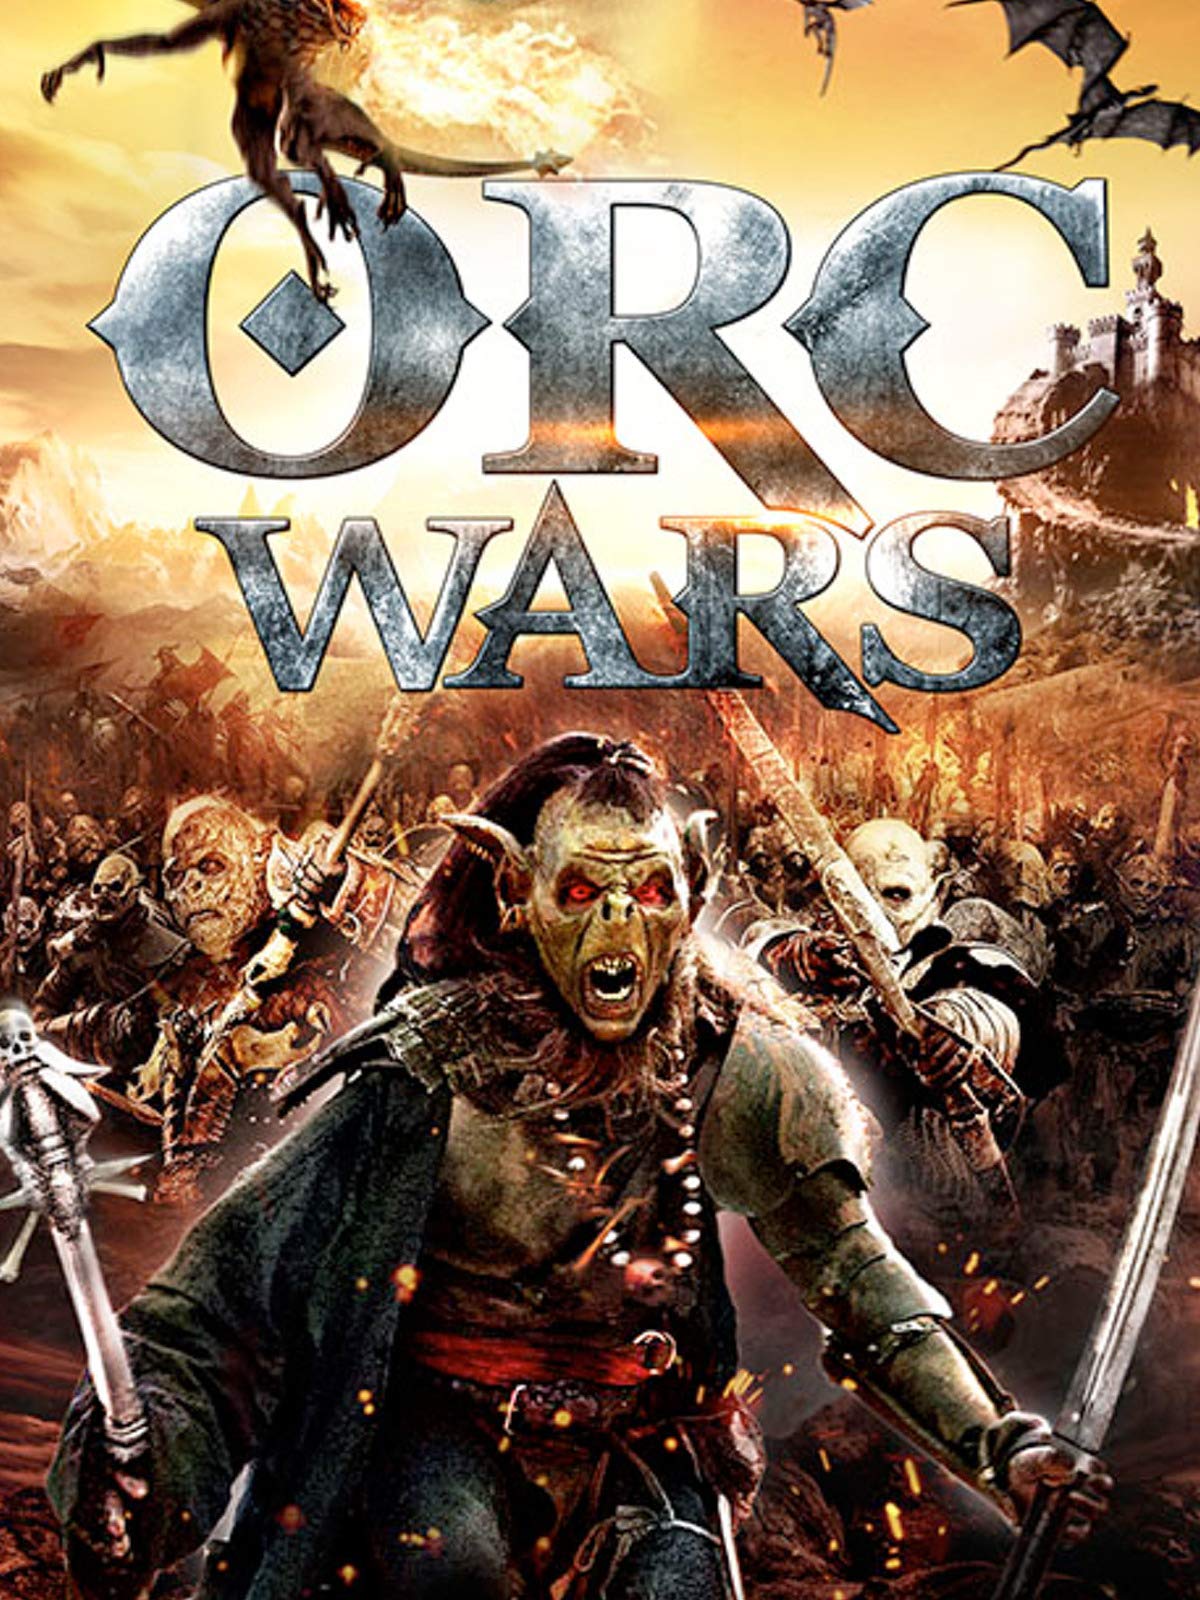 ดูหนังออนไลน์ฟรี Orc Wars (2013) สงครามออร์คพันธุ์โหด หนังเต็มเรื่อง หนังมาสเตอร์ ดูหนังHD ดูหนังออนไลน์ ดูหนังใหม่